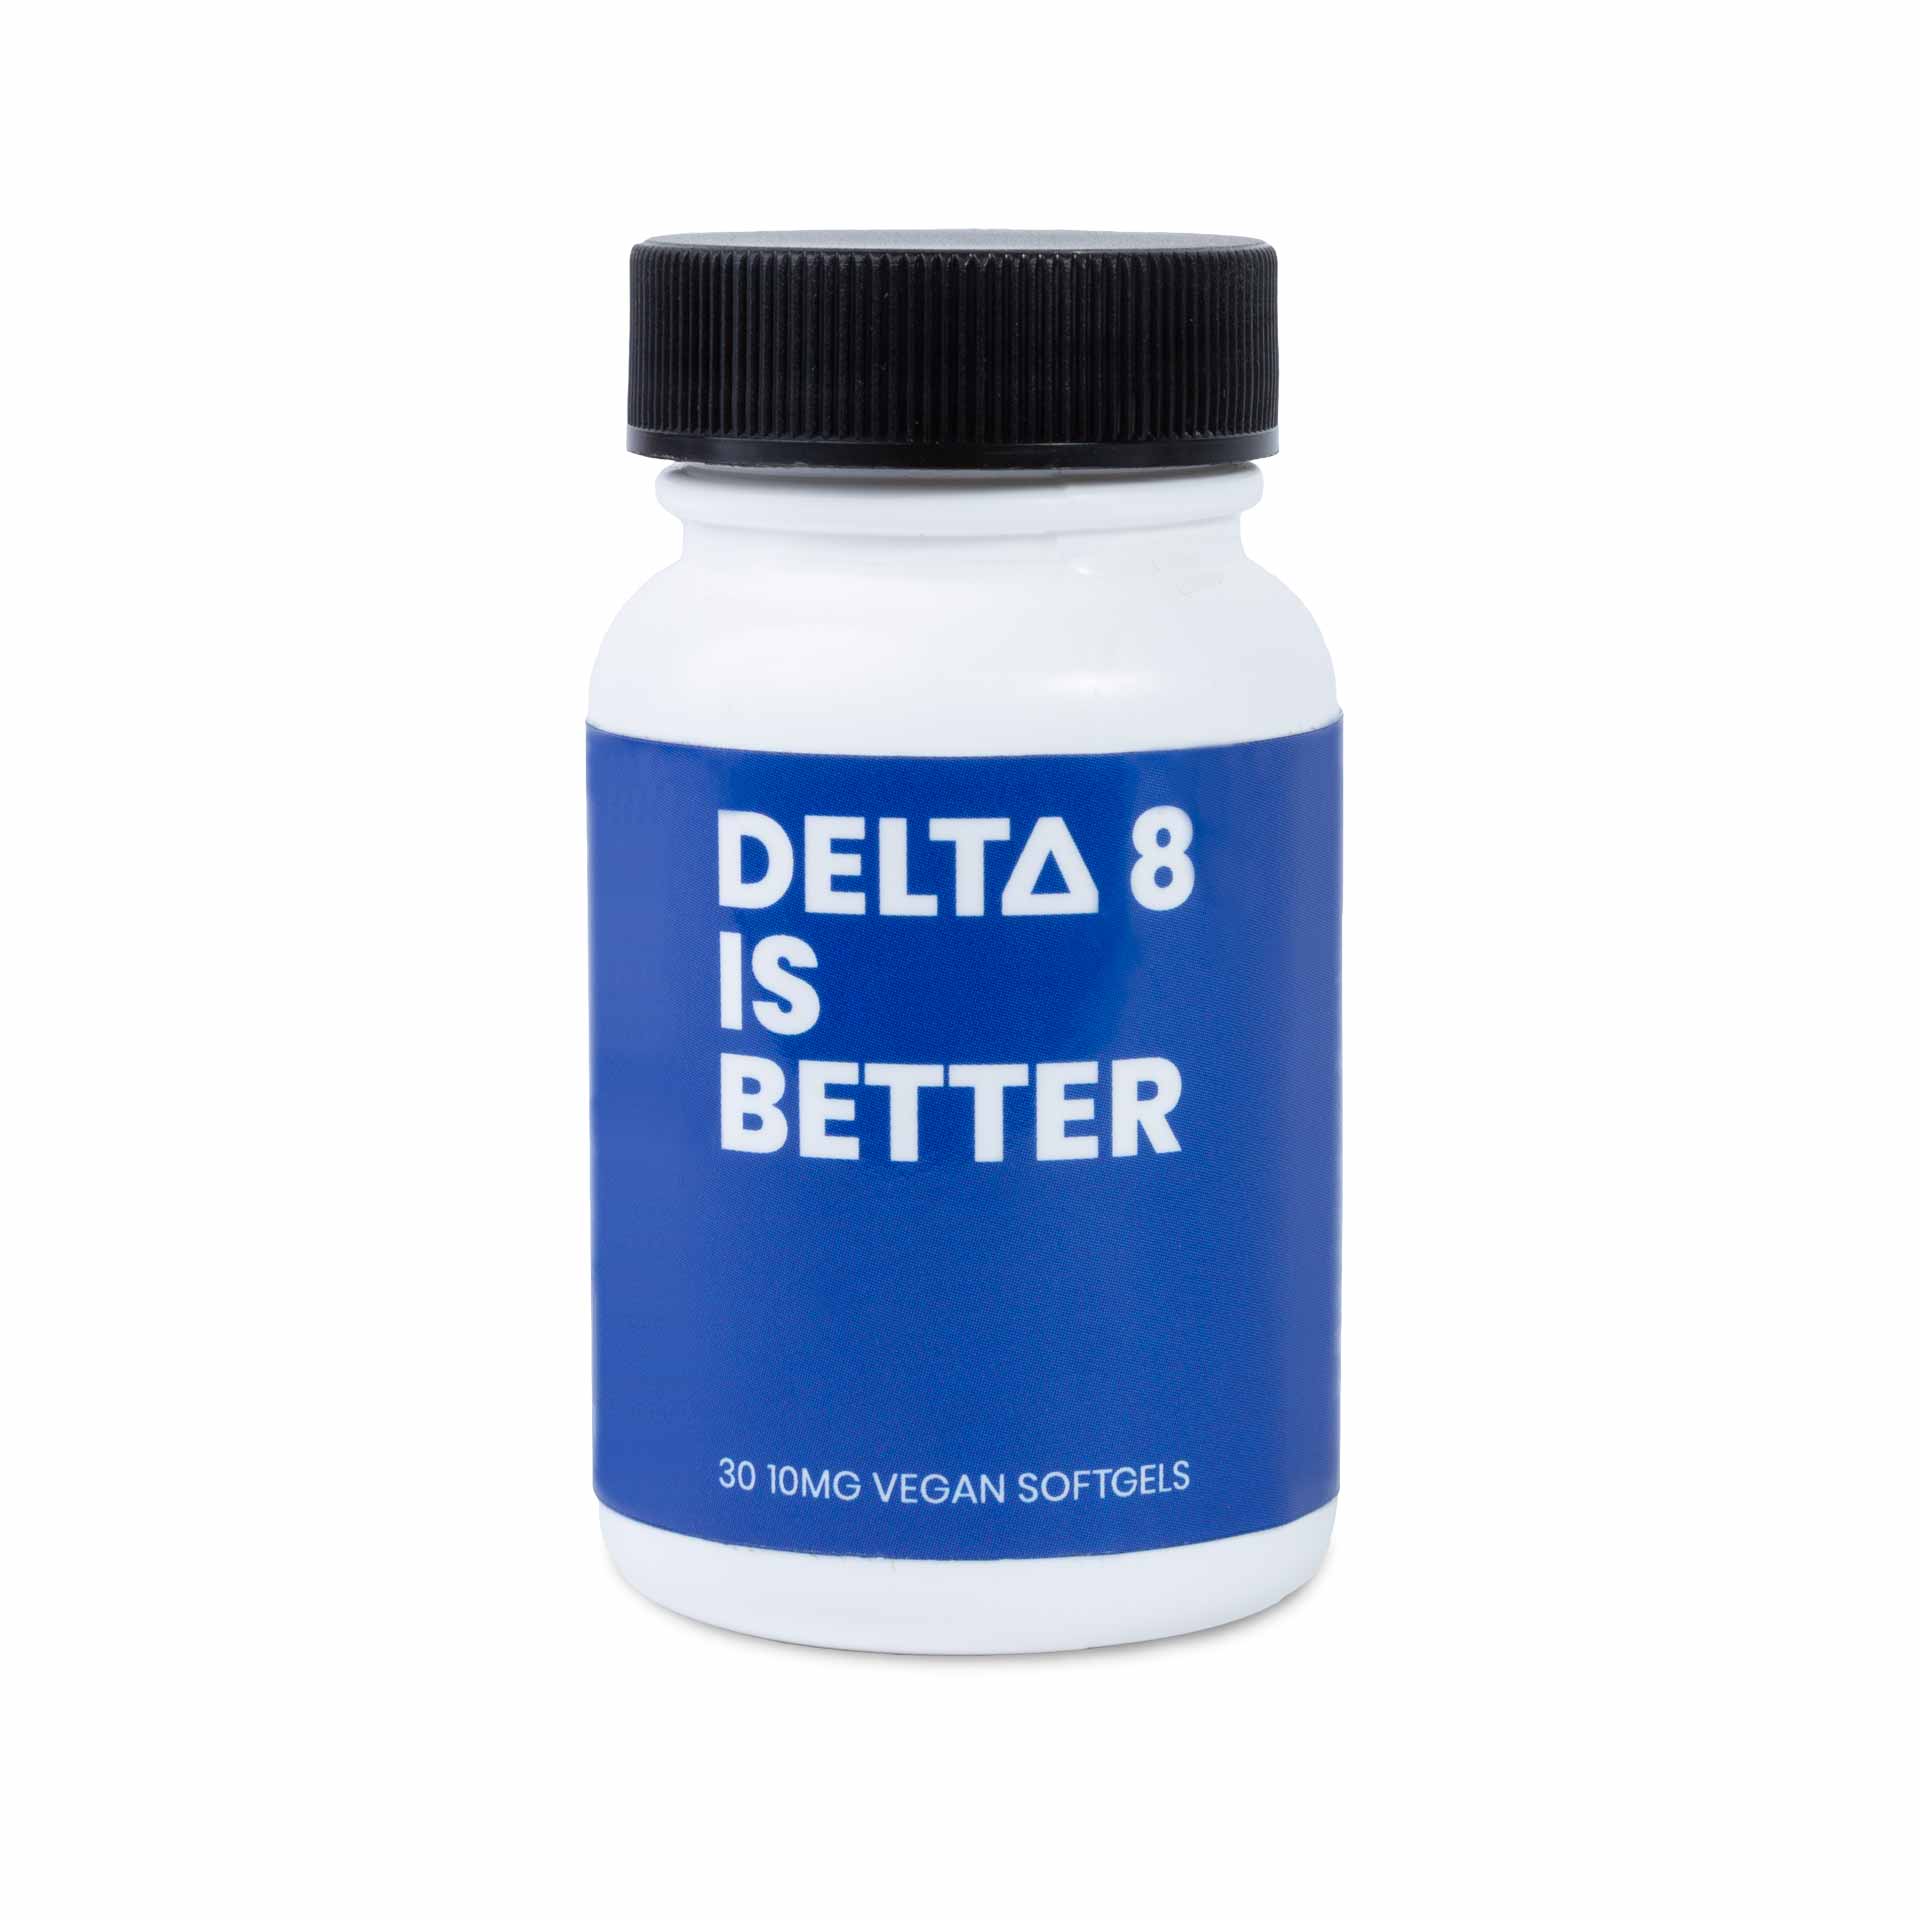 What are Delta 8 THC Capsules